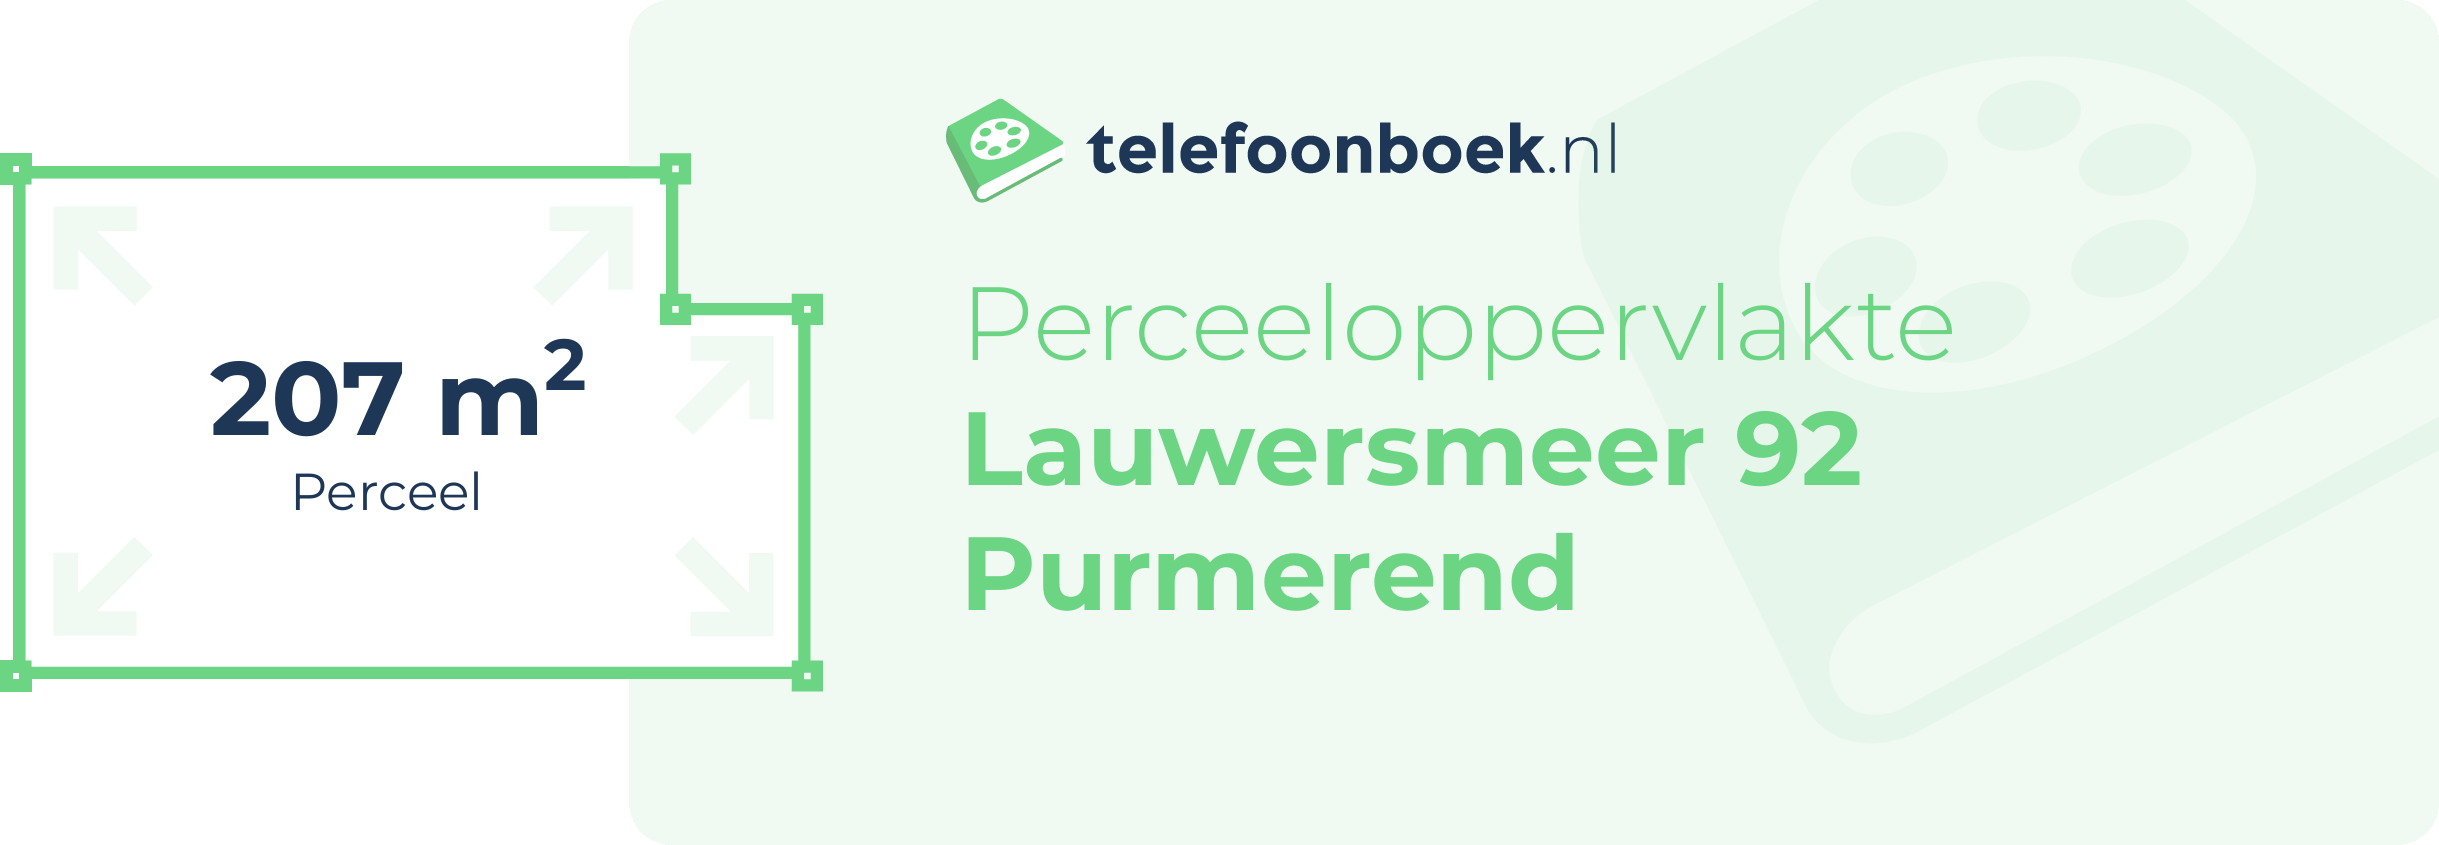 Perceeloppervlakte Lauwersmeer 92 Purmerend